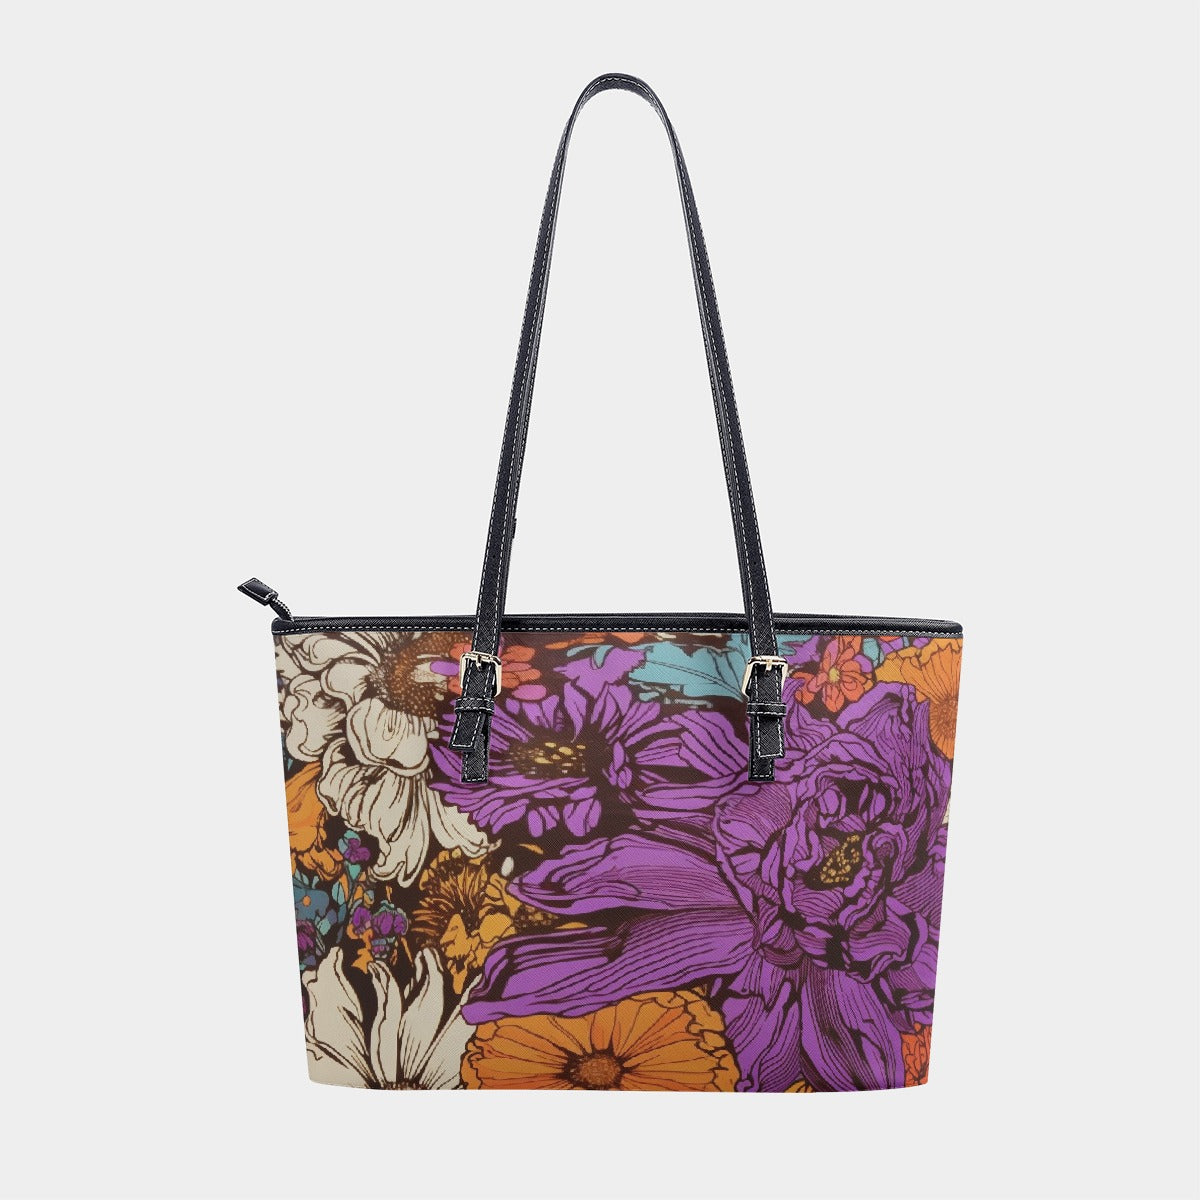 Graphic Floral handbag